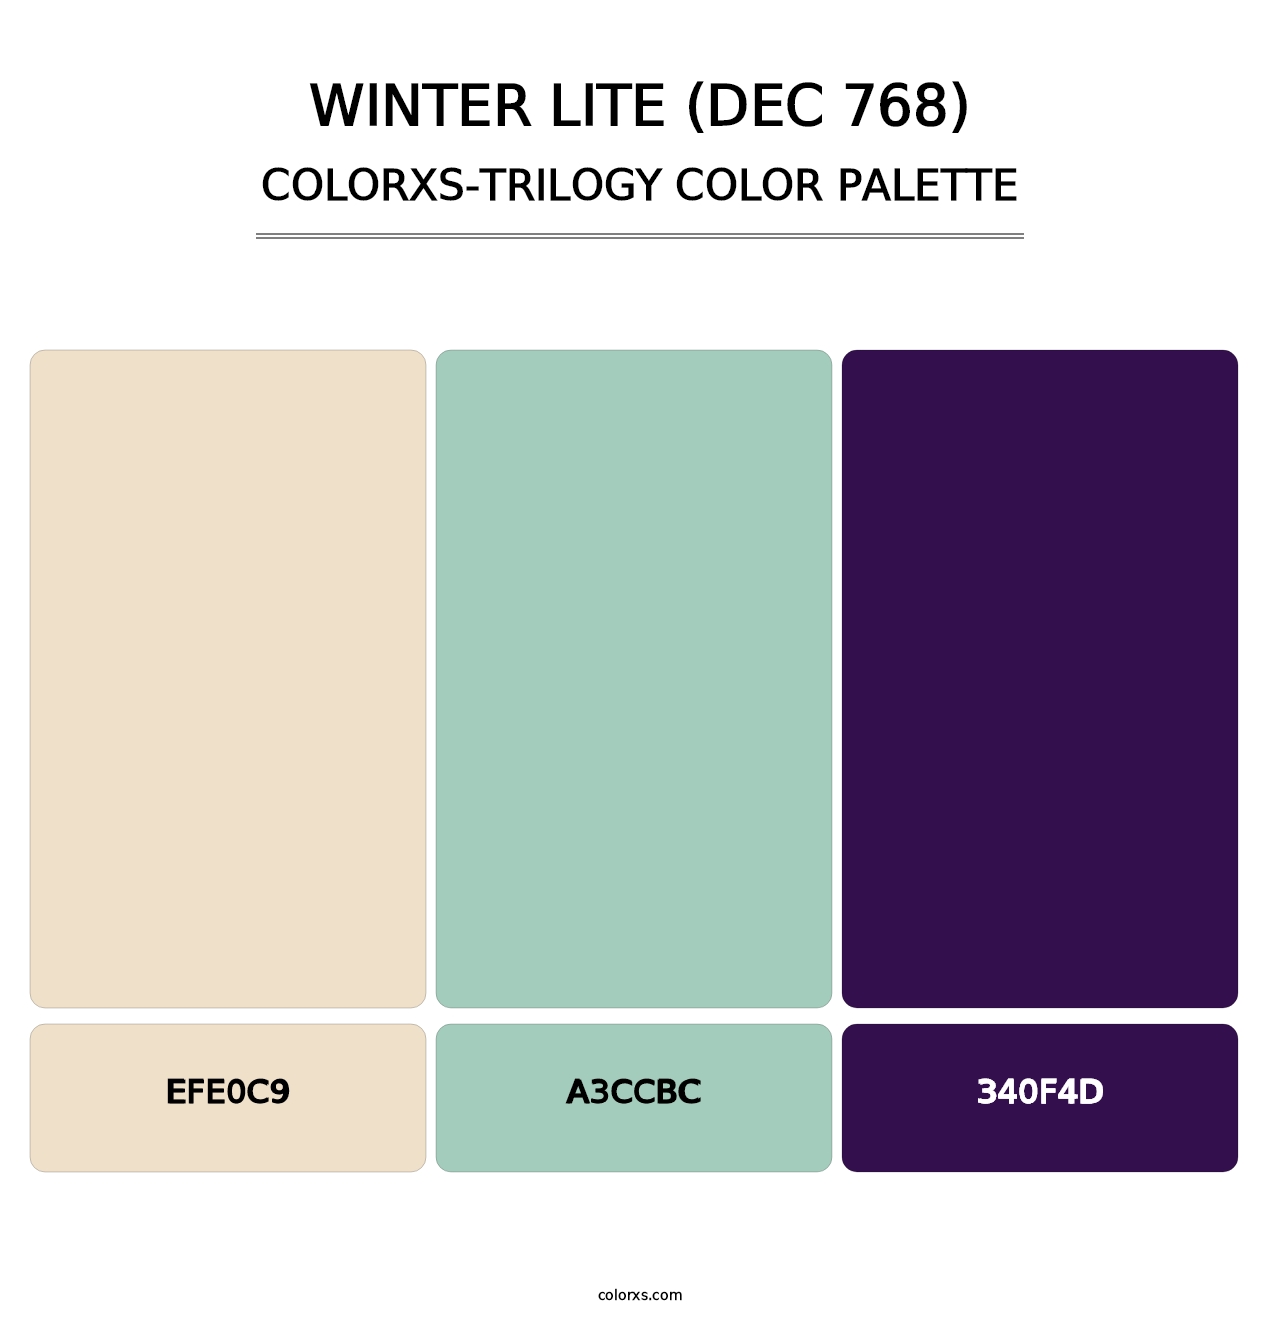 Winter Lite (DEC 768) - Colorxs Trilogy Palette